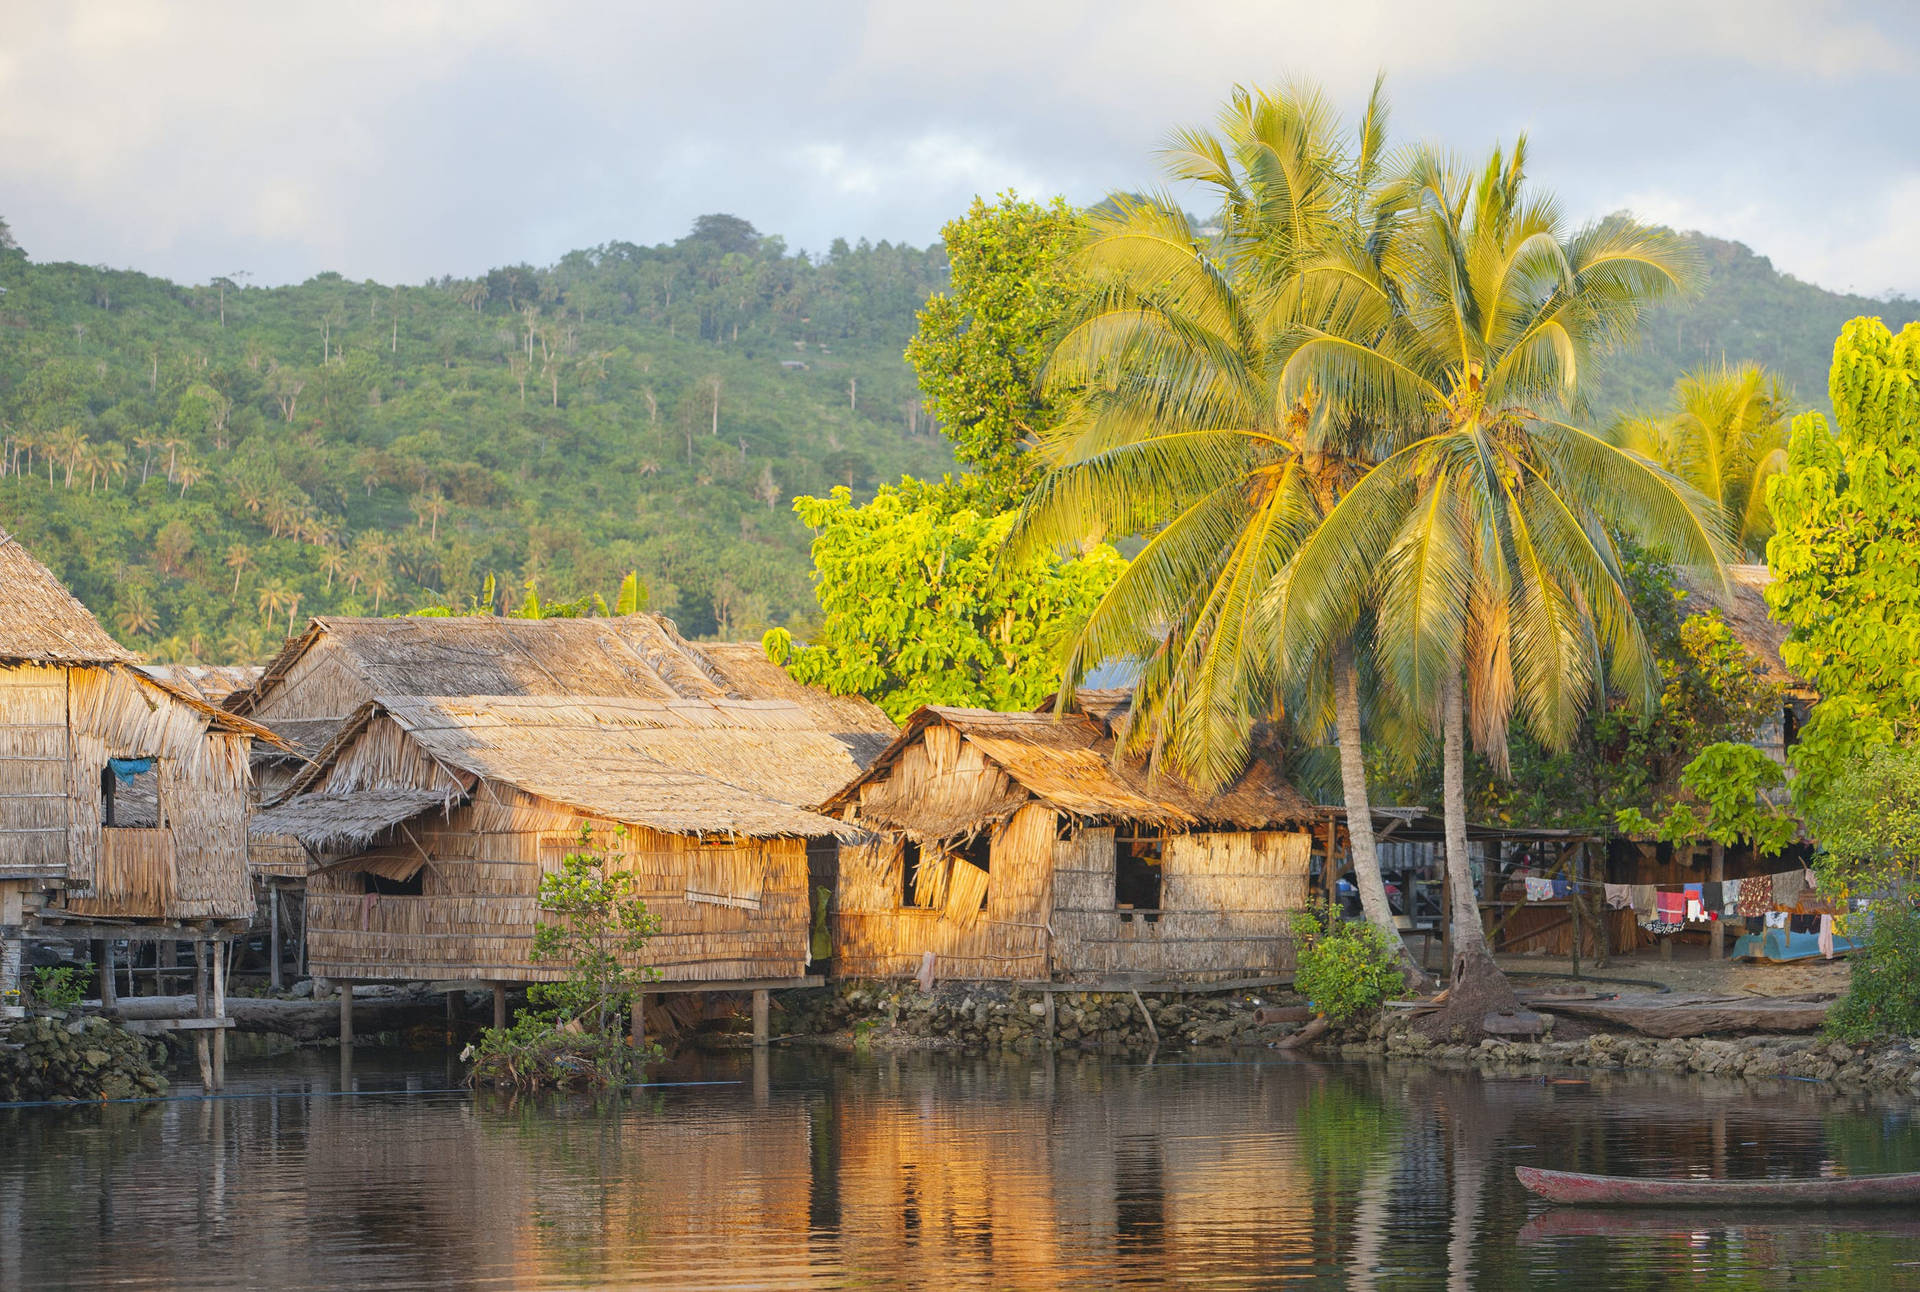 Häuseran Der Küste Der Salomonen Wallpaper